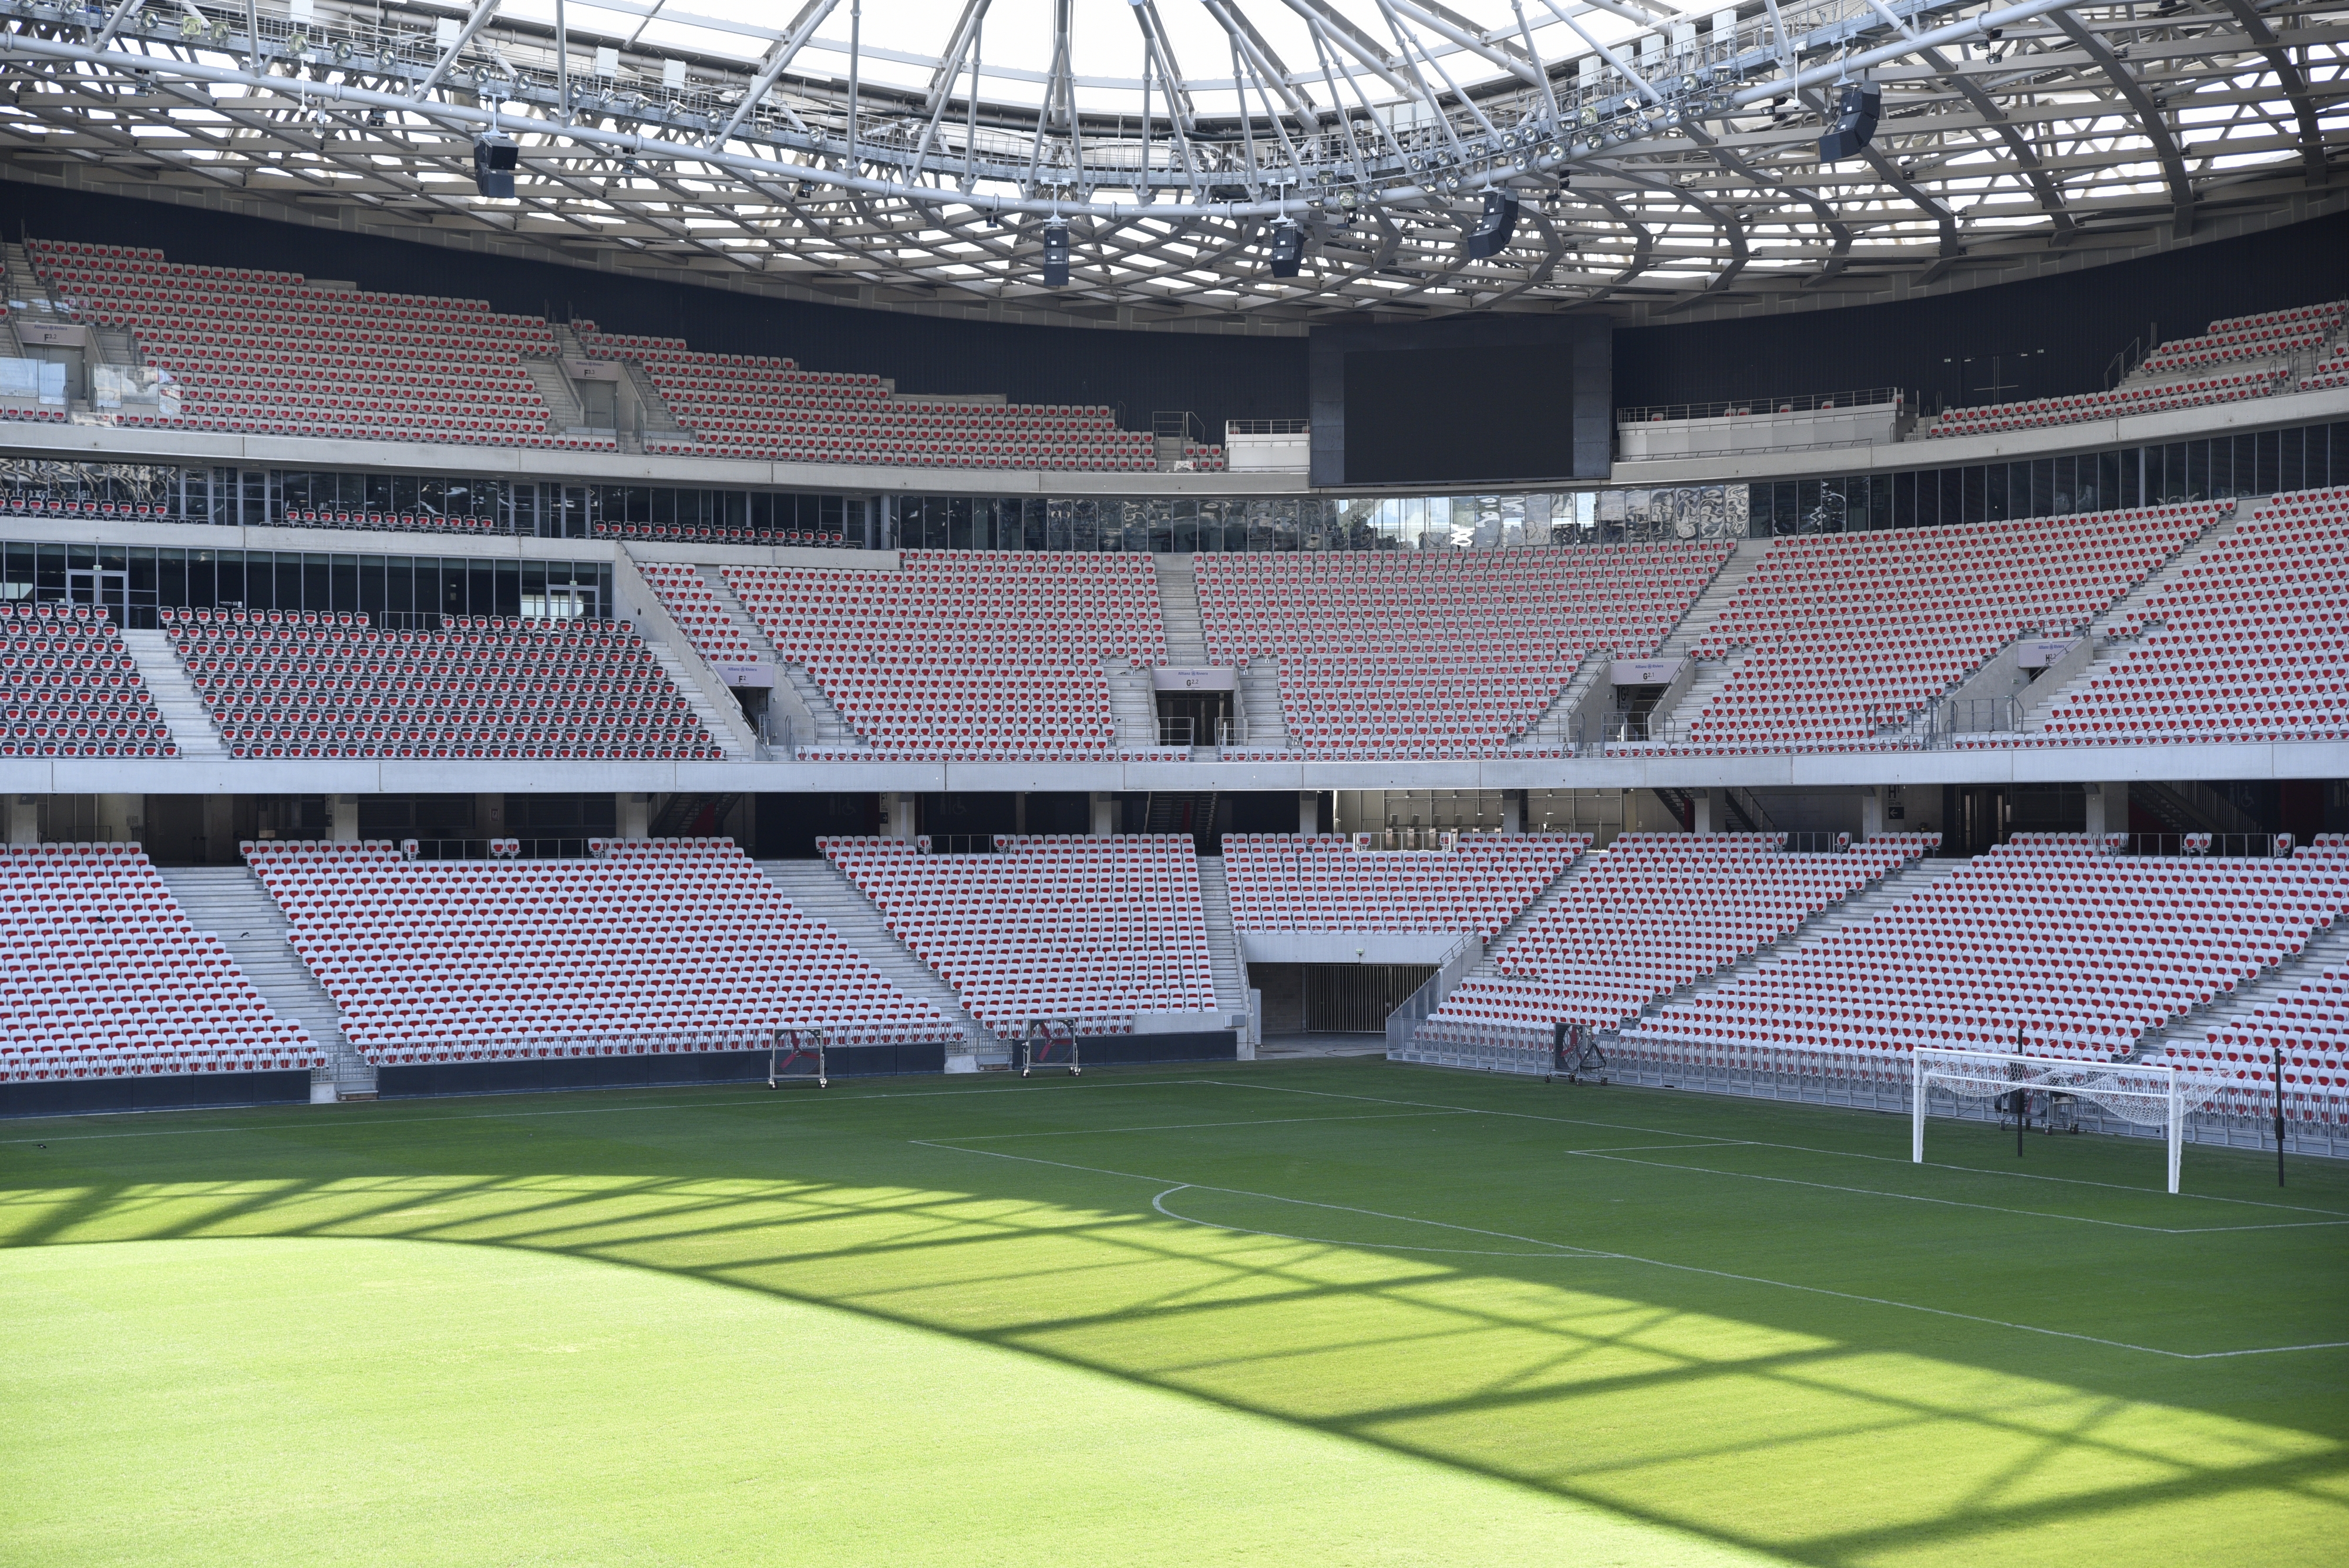 Allianz Riviera Stadium & Musée National du Sport: Guided Tour